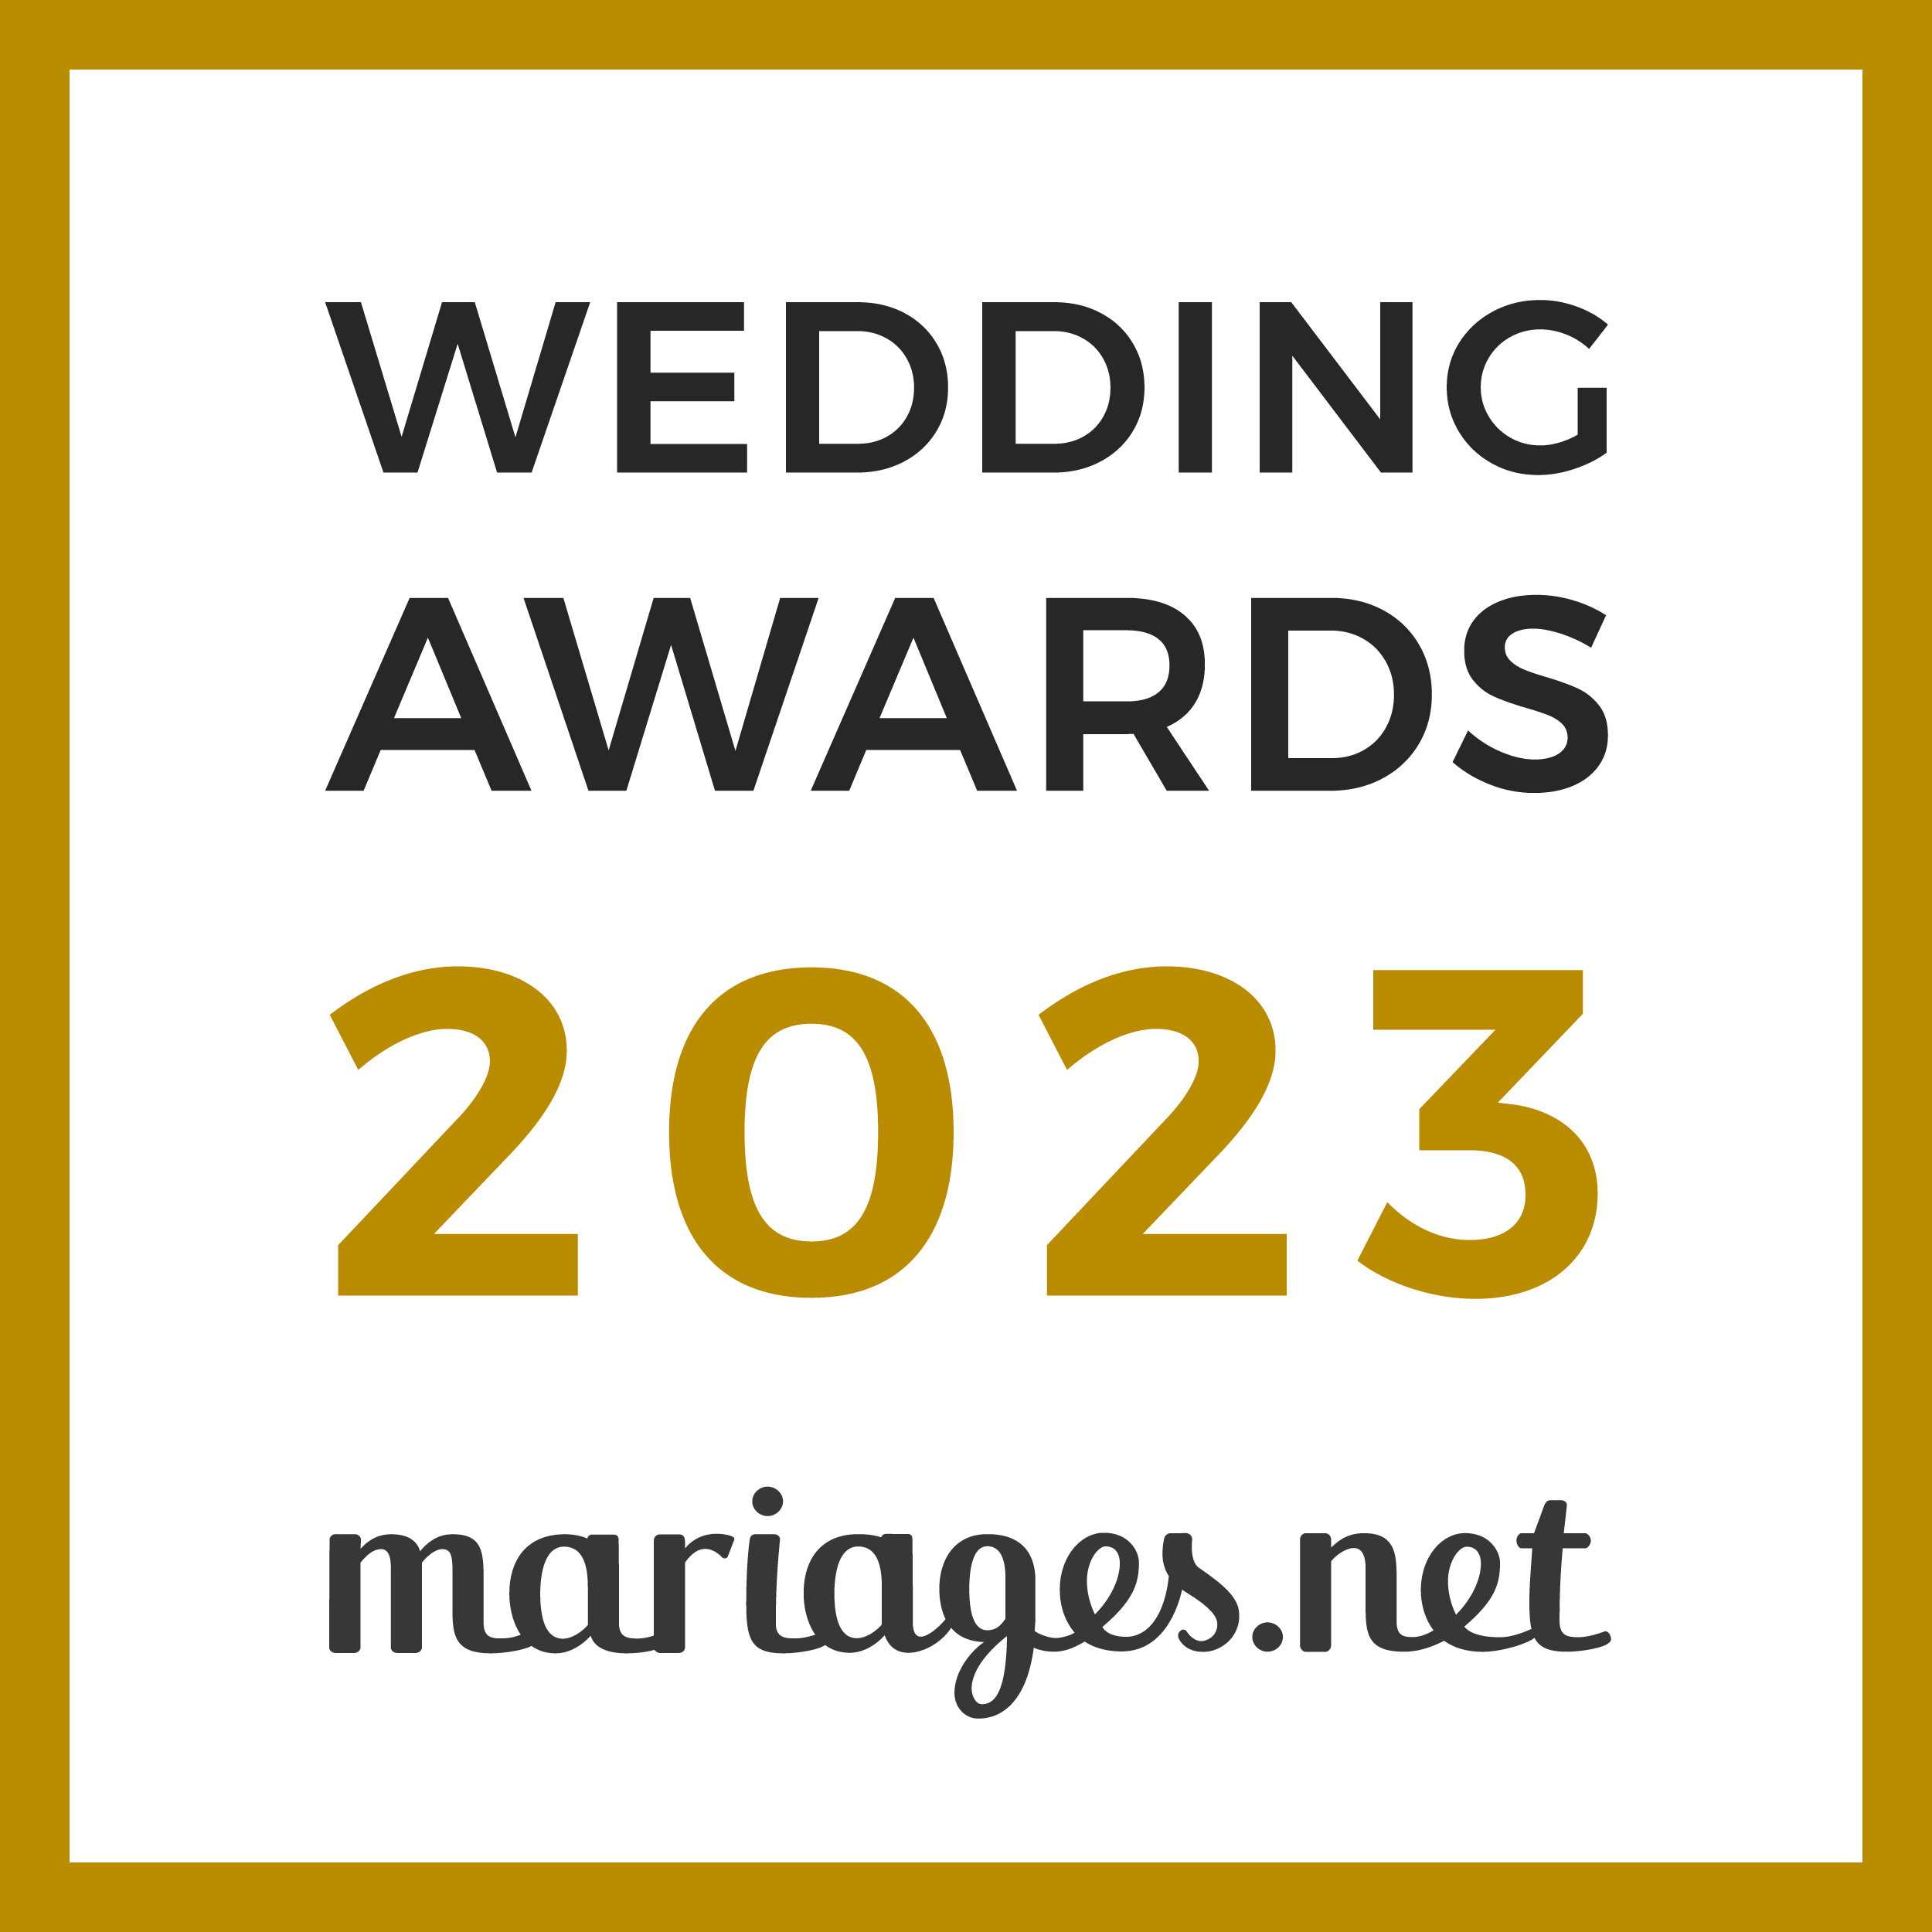 La Vallergue Traiteur, gagnant Wedding Awards 2023 Mariages.net